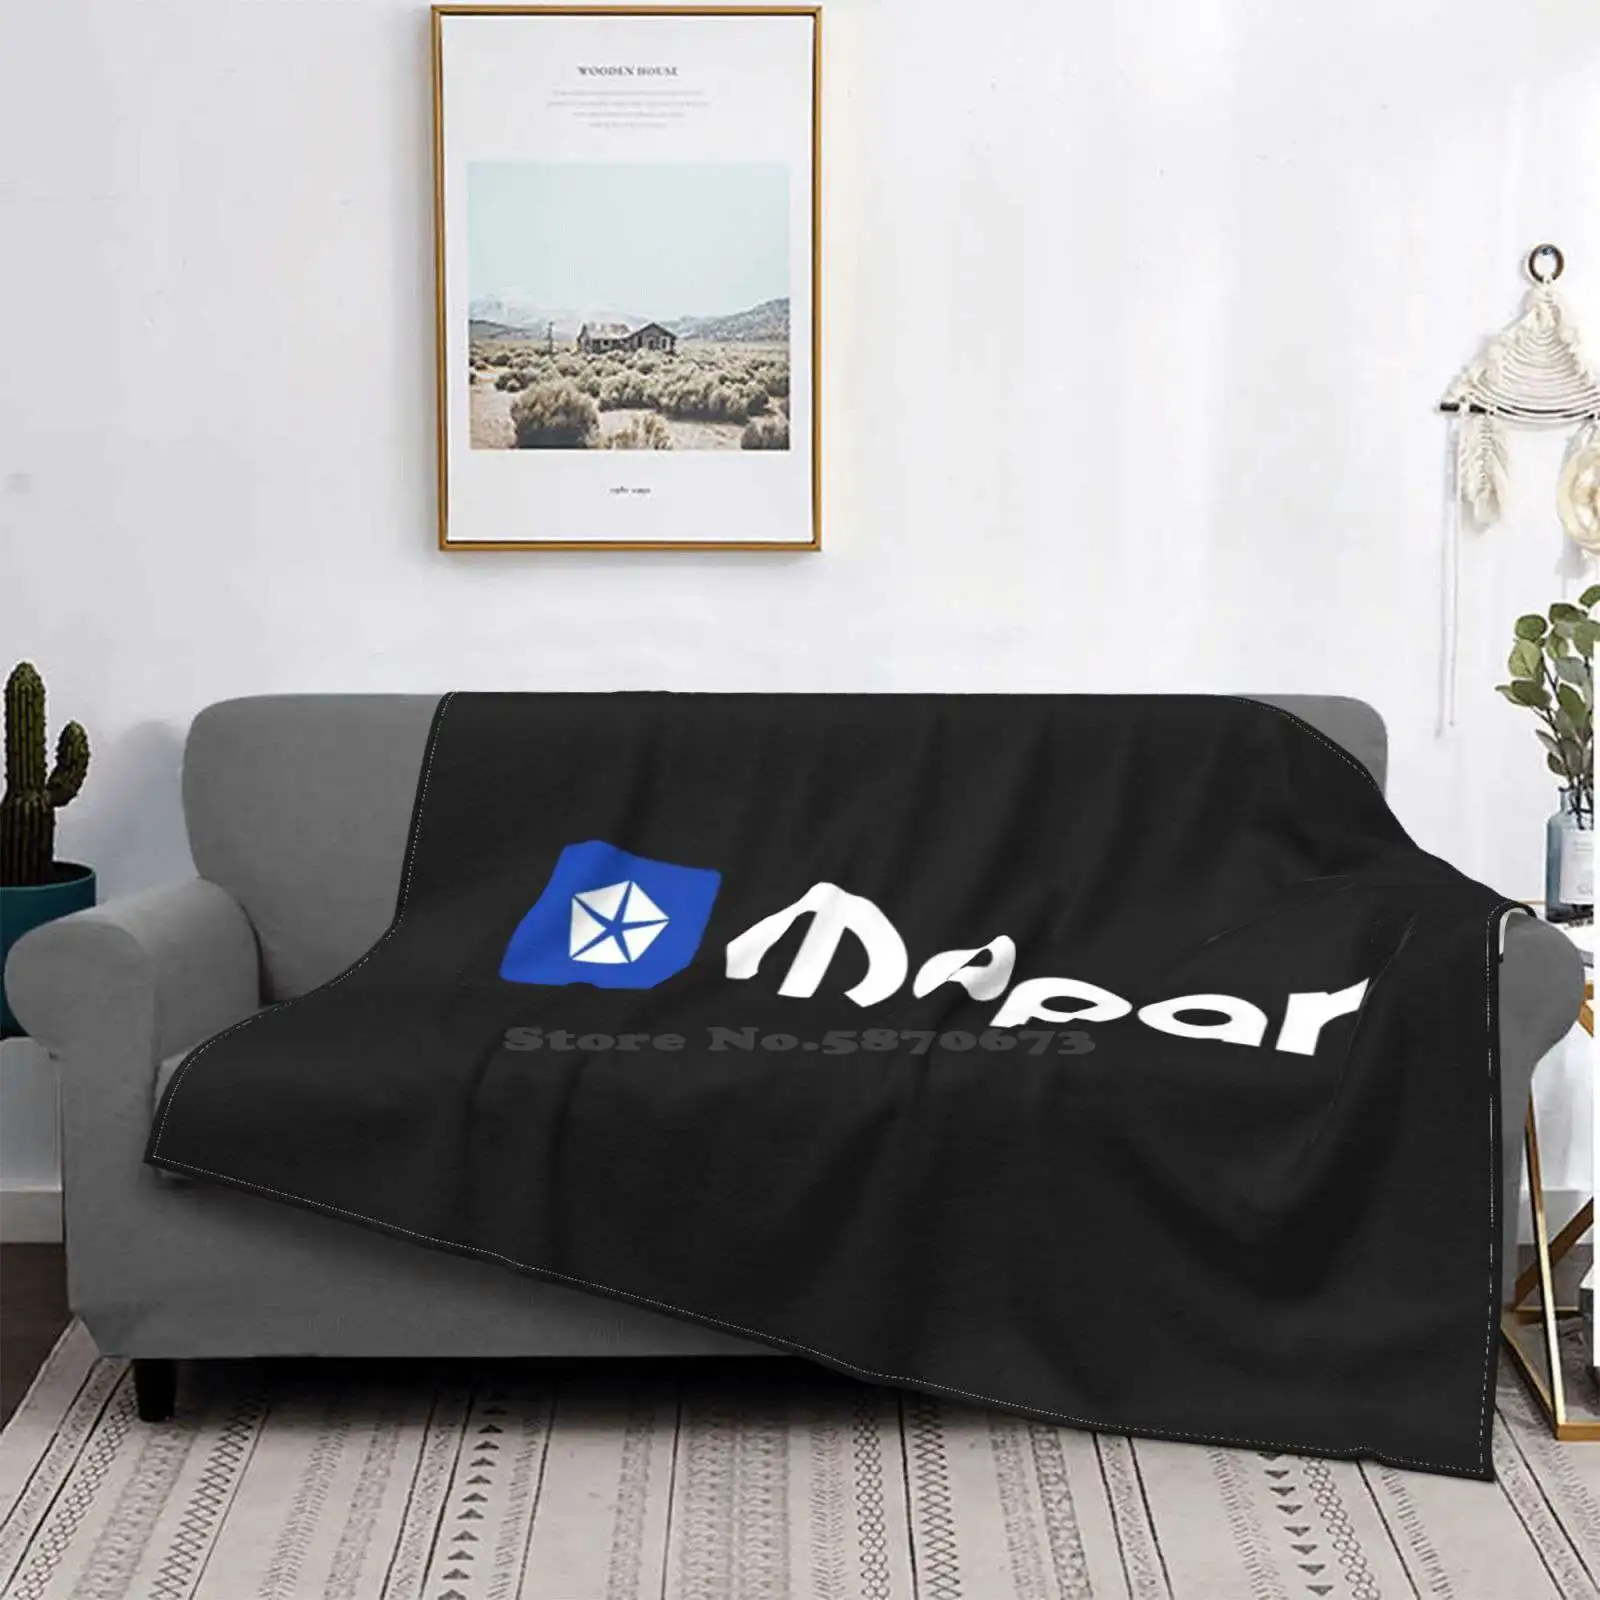 

Mopar сине-белый логотип, горизонтальный веер, искусство, мягкое теплое пледное одеяло, детали символа Fiat Chrysler, мышечные автомобили